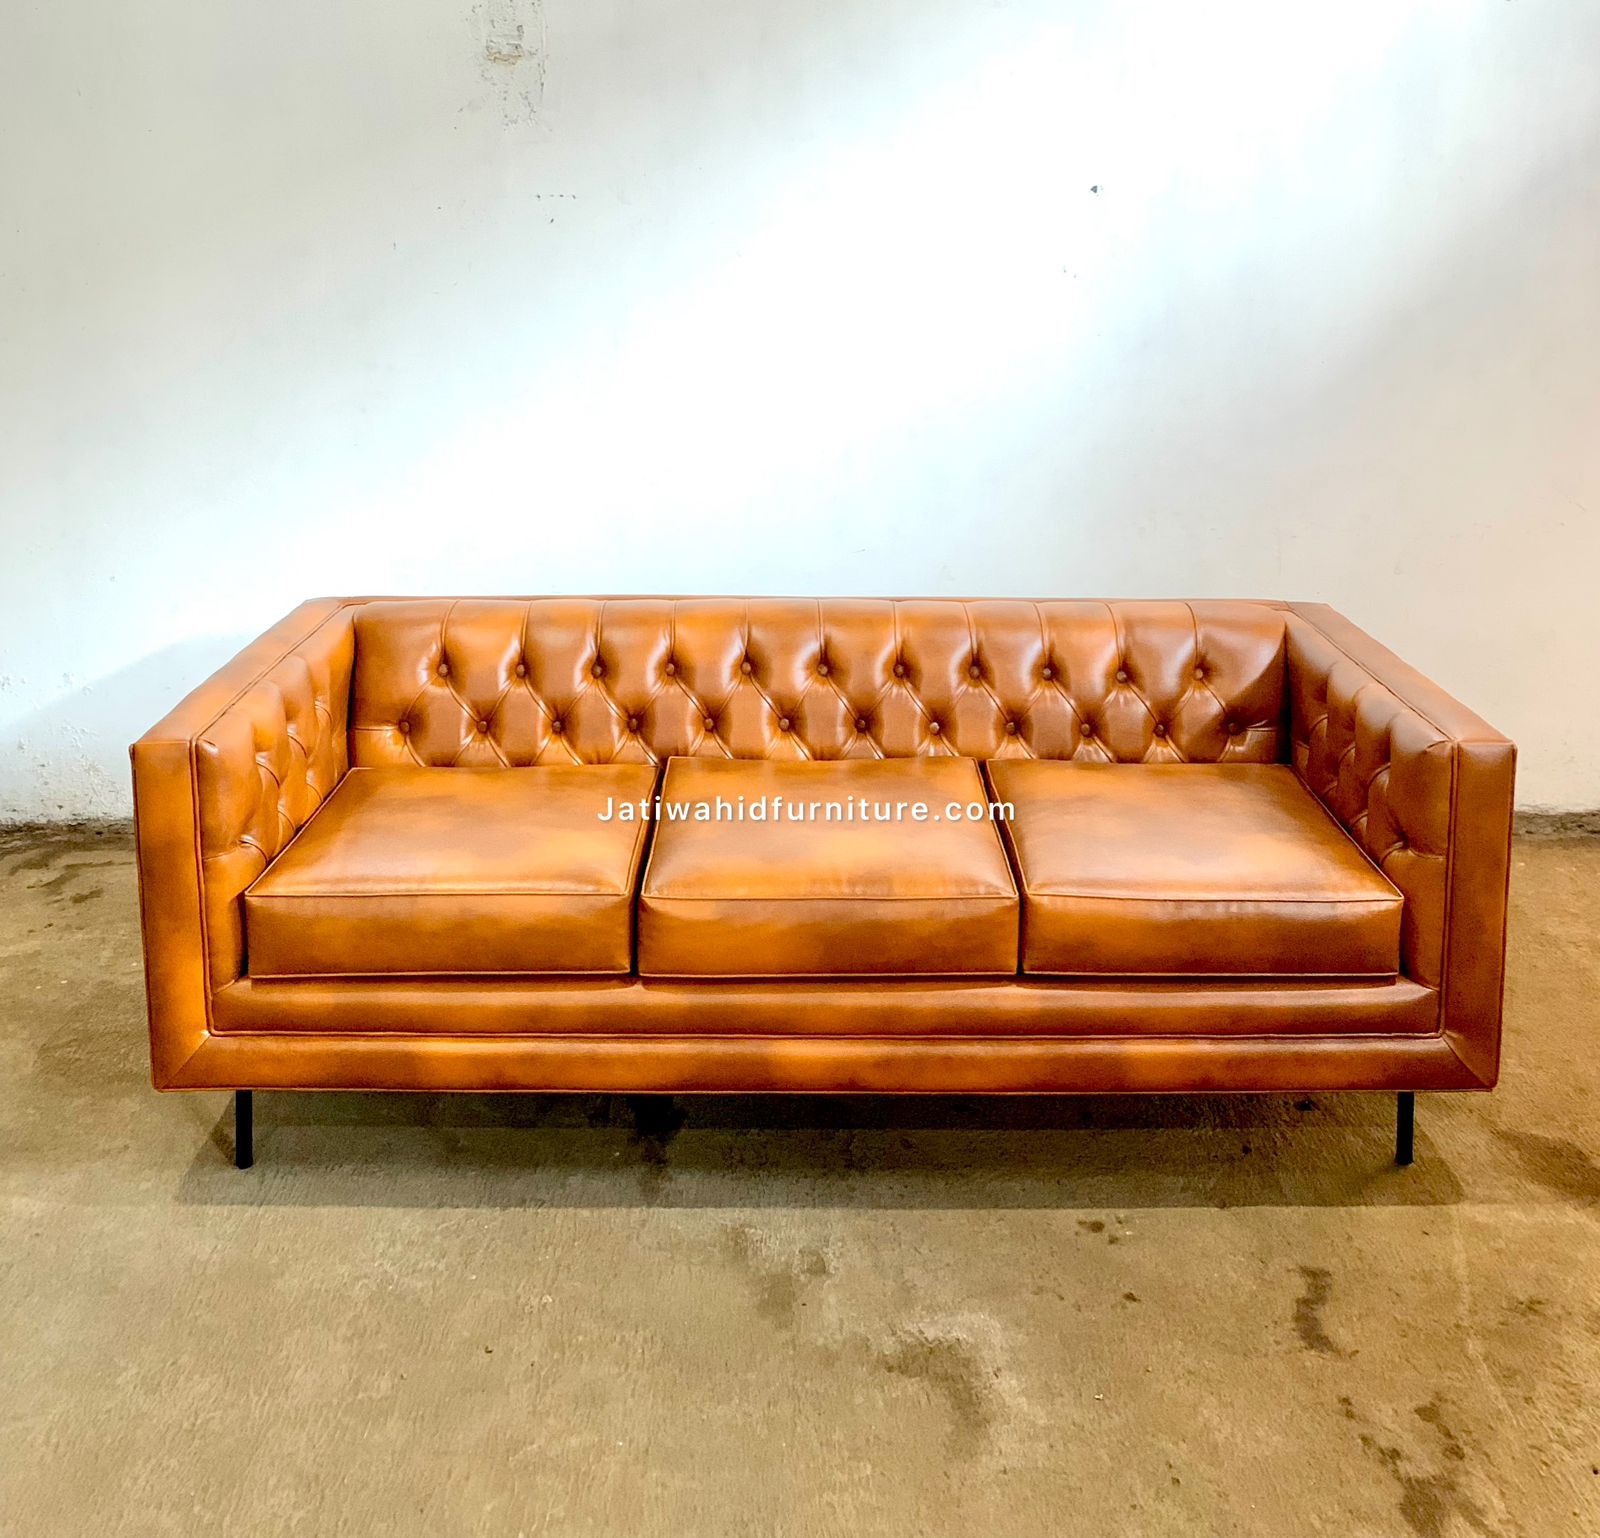 minimalis classic sofa modern,minimalis sofa modern,minimalis classic sofa,sofa klasik minimalis modern,minimalis modern classic,sofa kayu jati,sofa tamu minimalis,sofa minimalis ruang tamu,sofa tamu mewah terbaru,furniture jepara,jual sofa minimalis modern